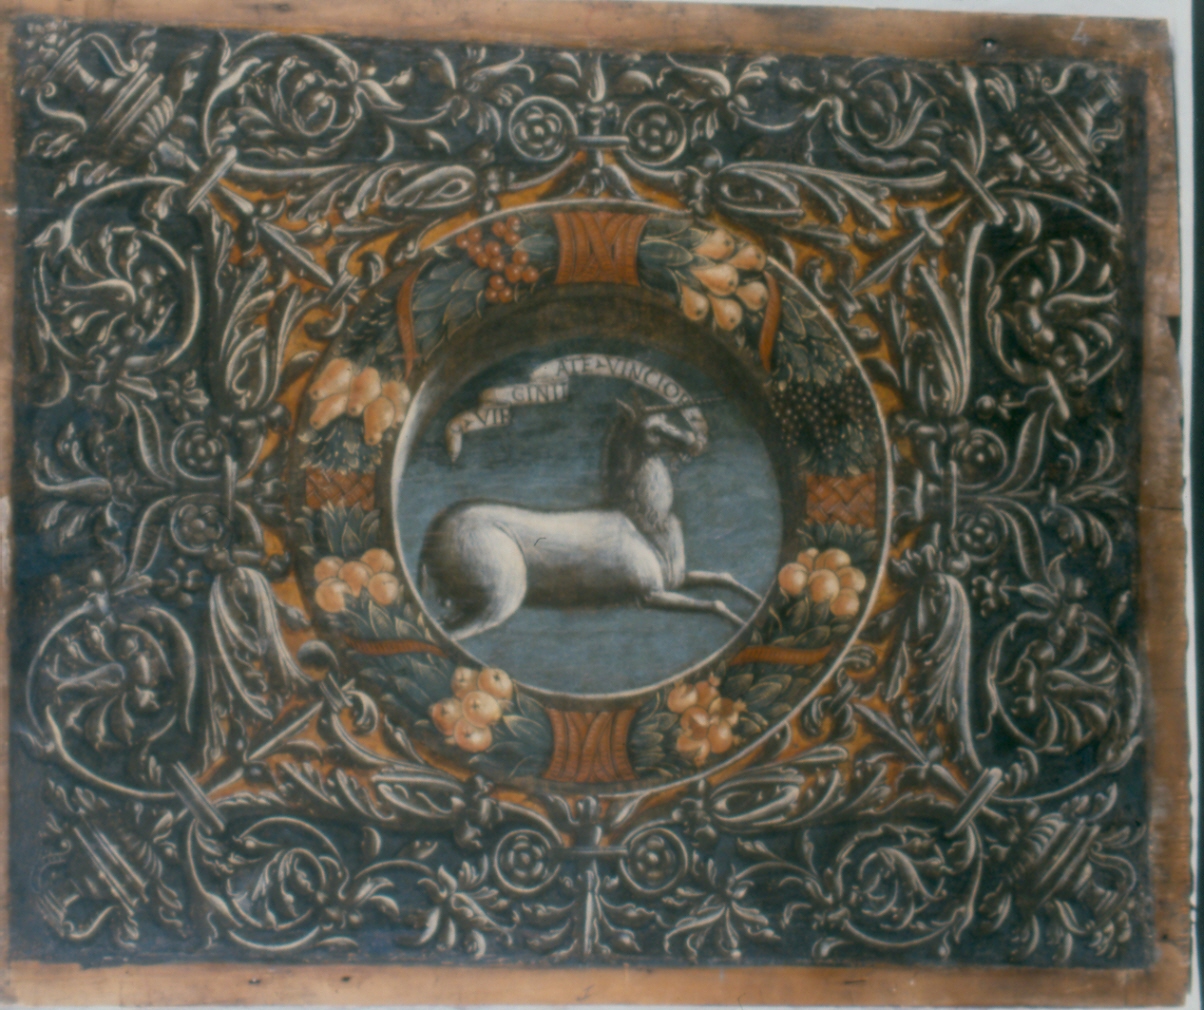 animali fantastici e motivi decorativi fitomorfi (decorazione pittorica, elemento d'insieme) di Falconetto Giovanni Maria (attribuito) (inizio sec. XVI)